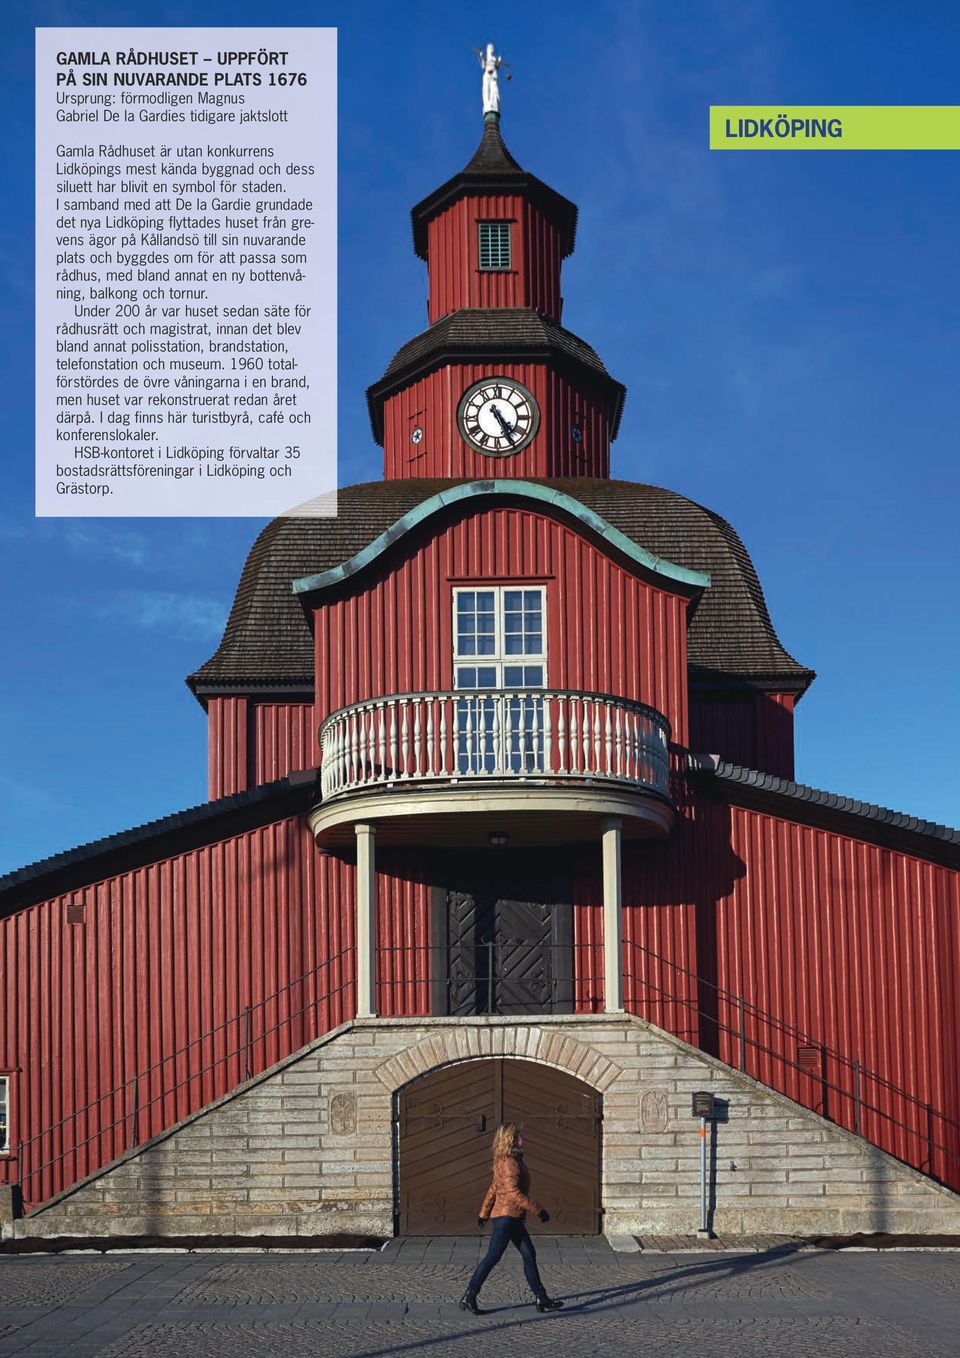 I samband med att De la Gardie grundade det nya Lidköping flyttades huset från grevens ägor på Kållandsö till sin nuvarande plats och byggdes om för att passa som rådhus, med bland annat en ny